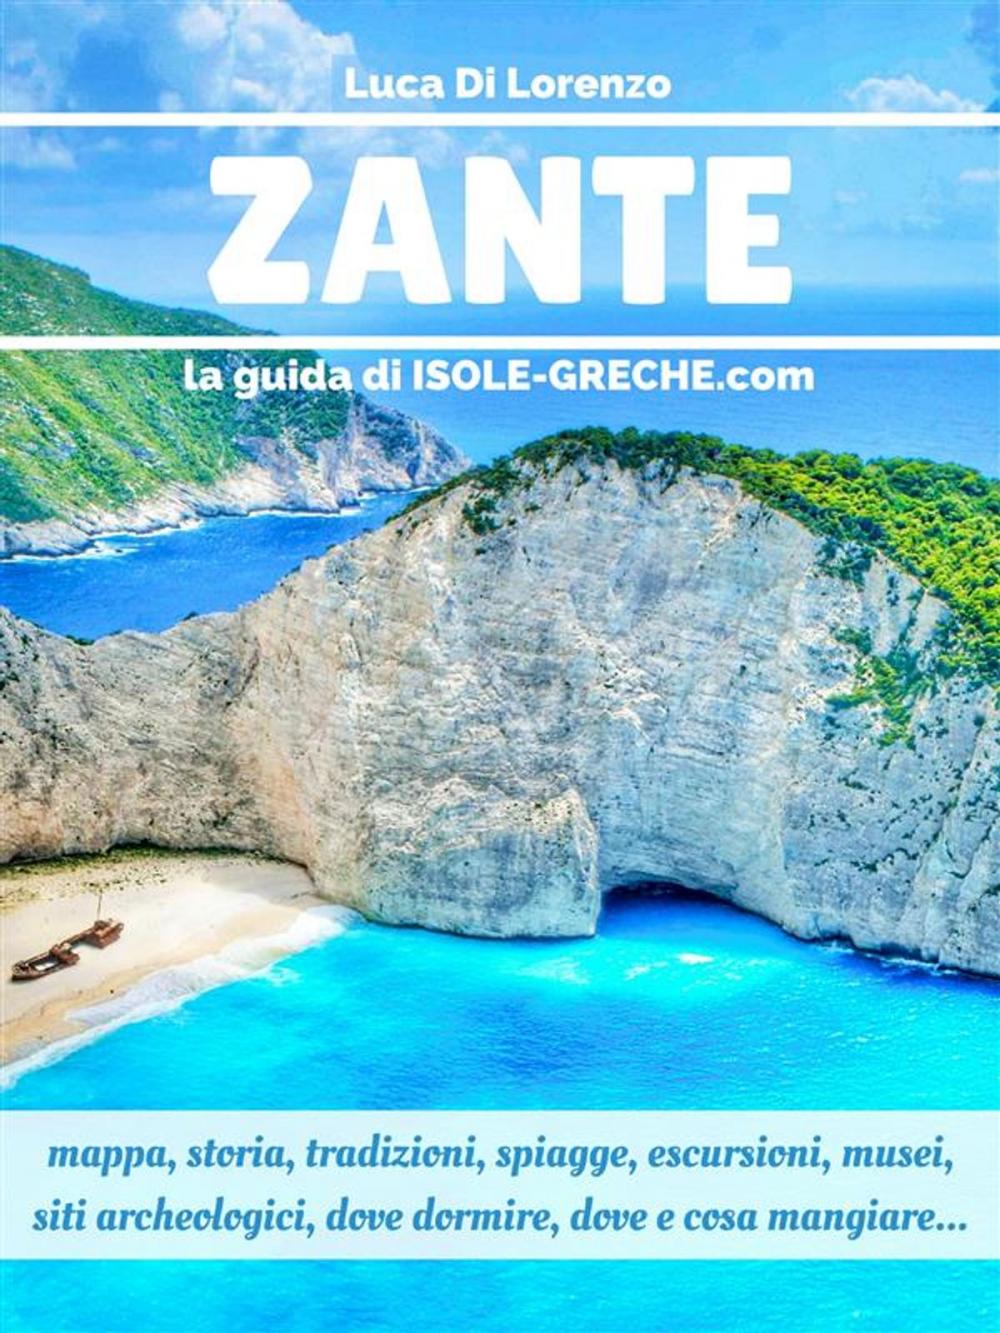 Big bigCover of Zante - La guida di isole-greche.com